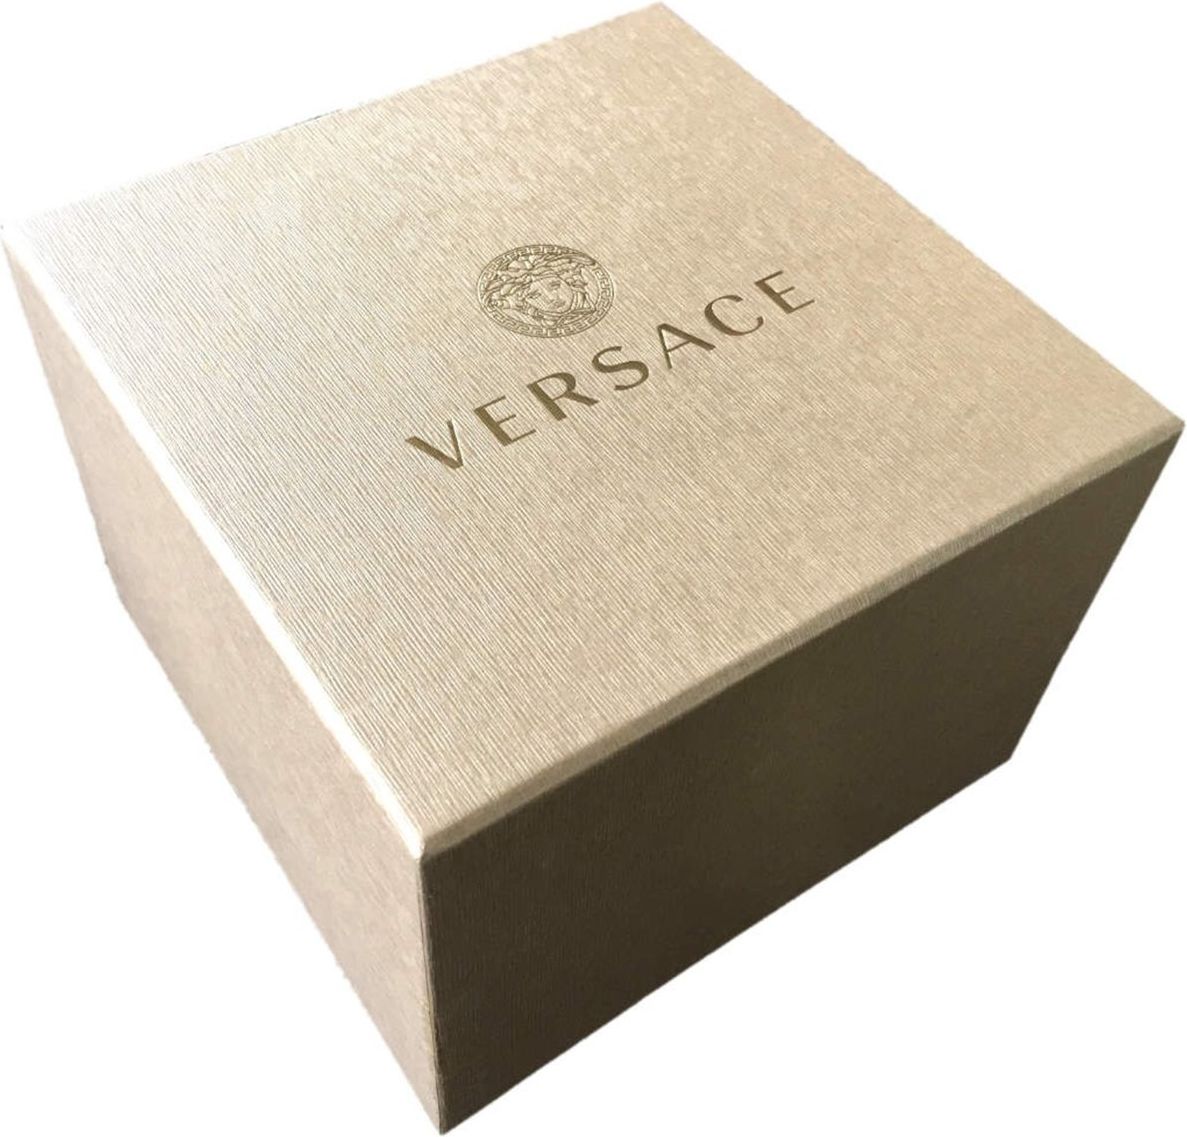 Versace VERD01420 Palazzo heren horloge 43 mm Zwart